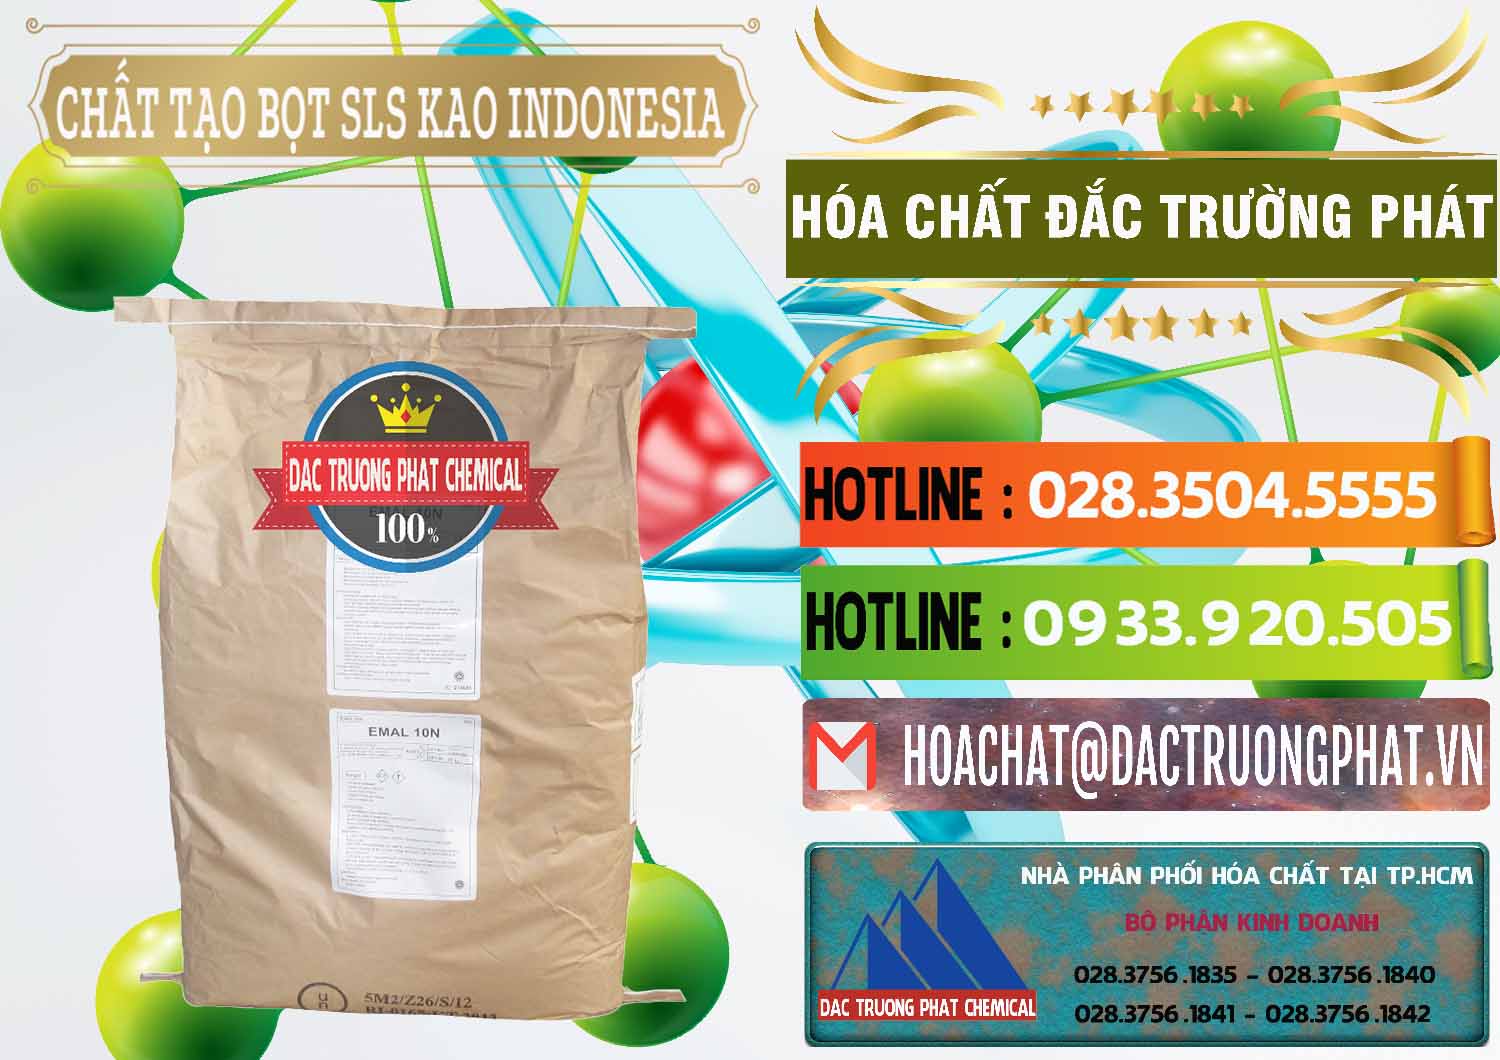 Cung cấp và bán Chất Tạo Bọt SLS - Sodium Lauryl Sulfate EMAL 10N KAO Indonesia - 0047 - Chuyên bán ( phân phối ) hóa chất tại TP.HCM - cungcaphoachat.com.vn